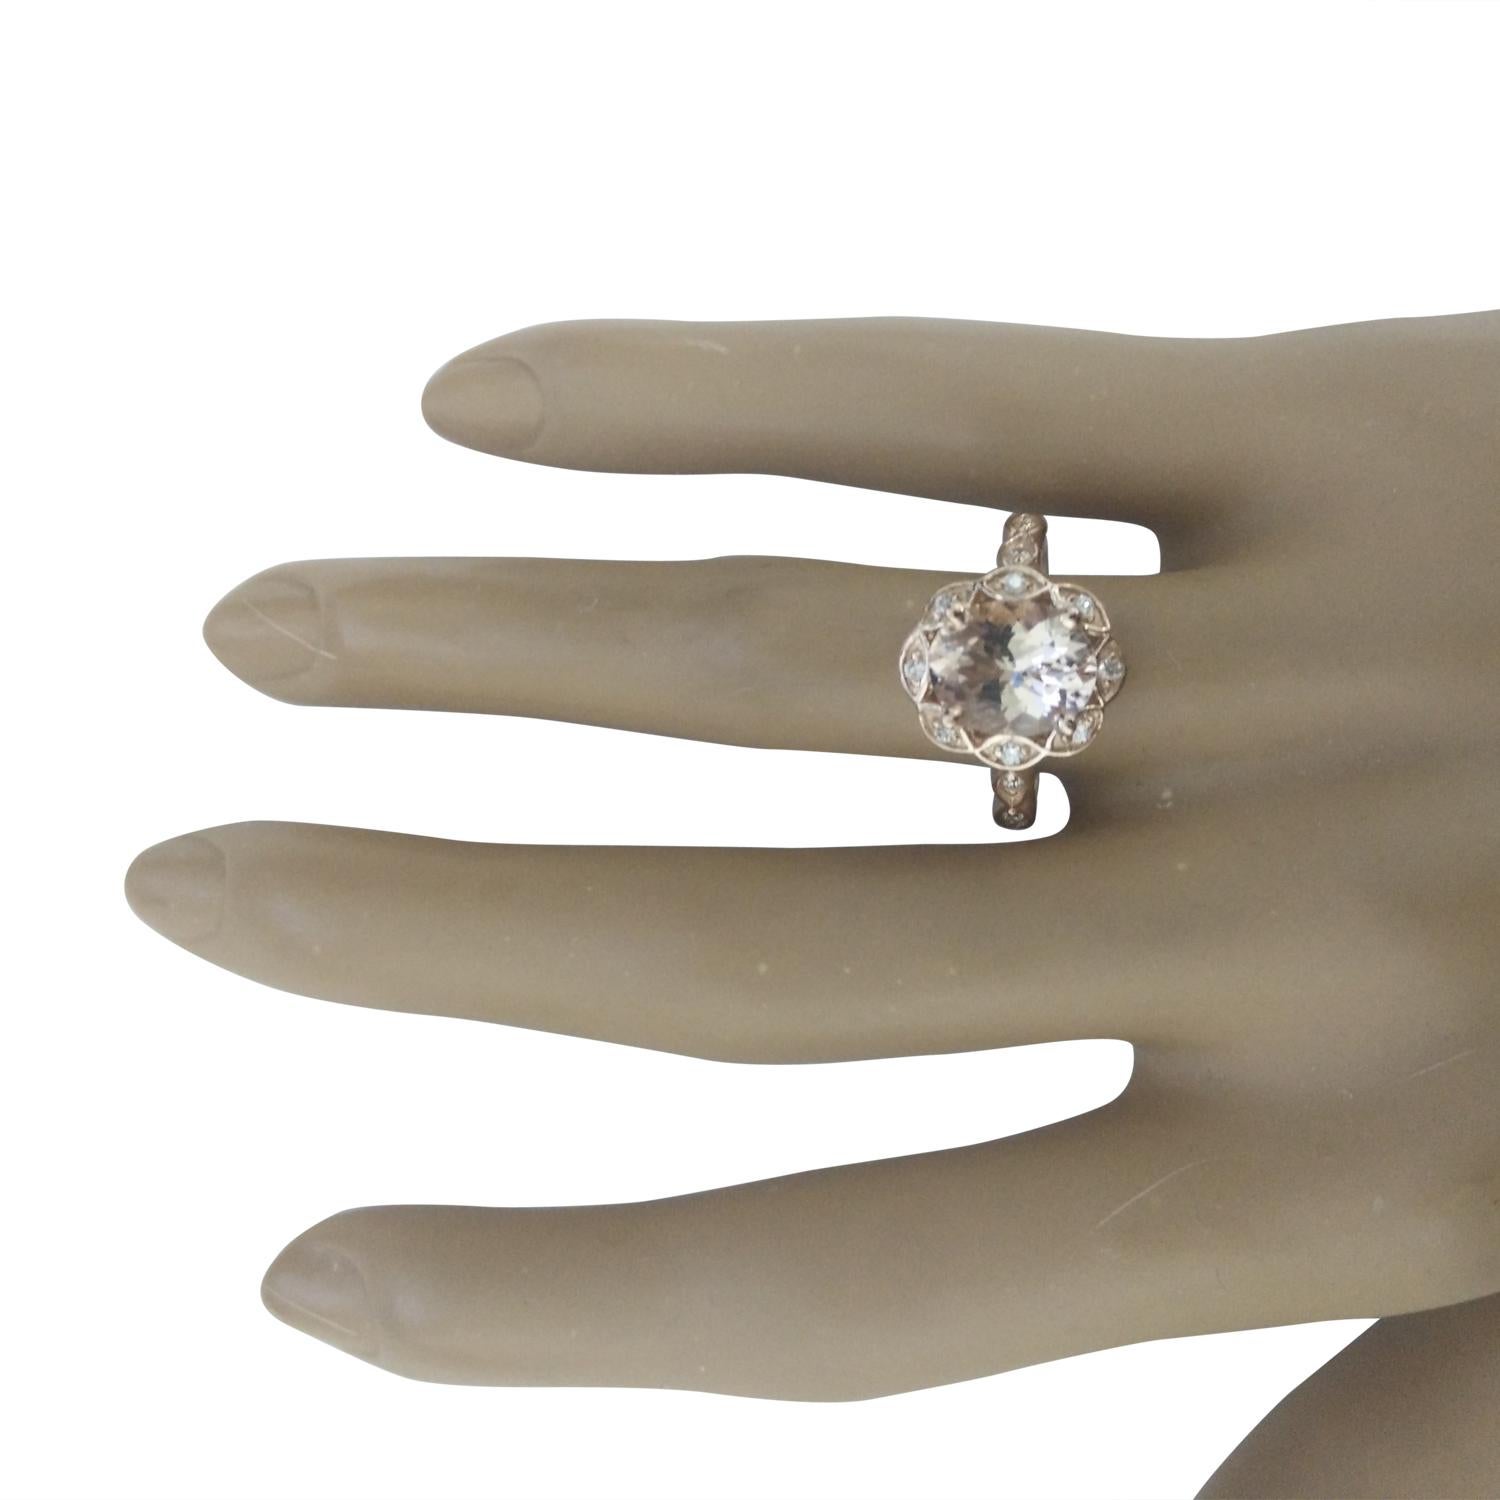 2.77 Carat Natural Morganite 14 Karat Solid Rose Gold Diamond Ring
Estampillé : 14K
Poids total de l'anneau : 4,8 grammes 
Poids de la Morganite : 2.52 Carat (10.00x8.00 Millimètres)  
Poids du diamant : 0,25 carat (couleur F-G, pureté